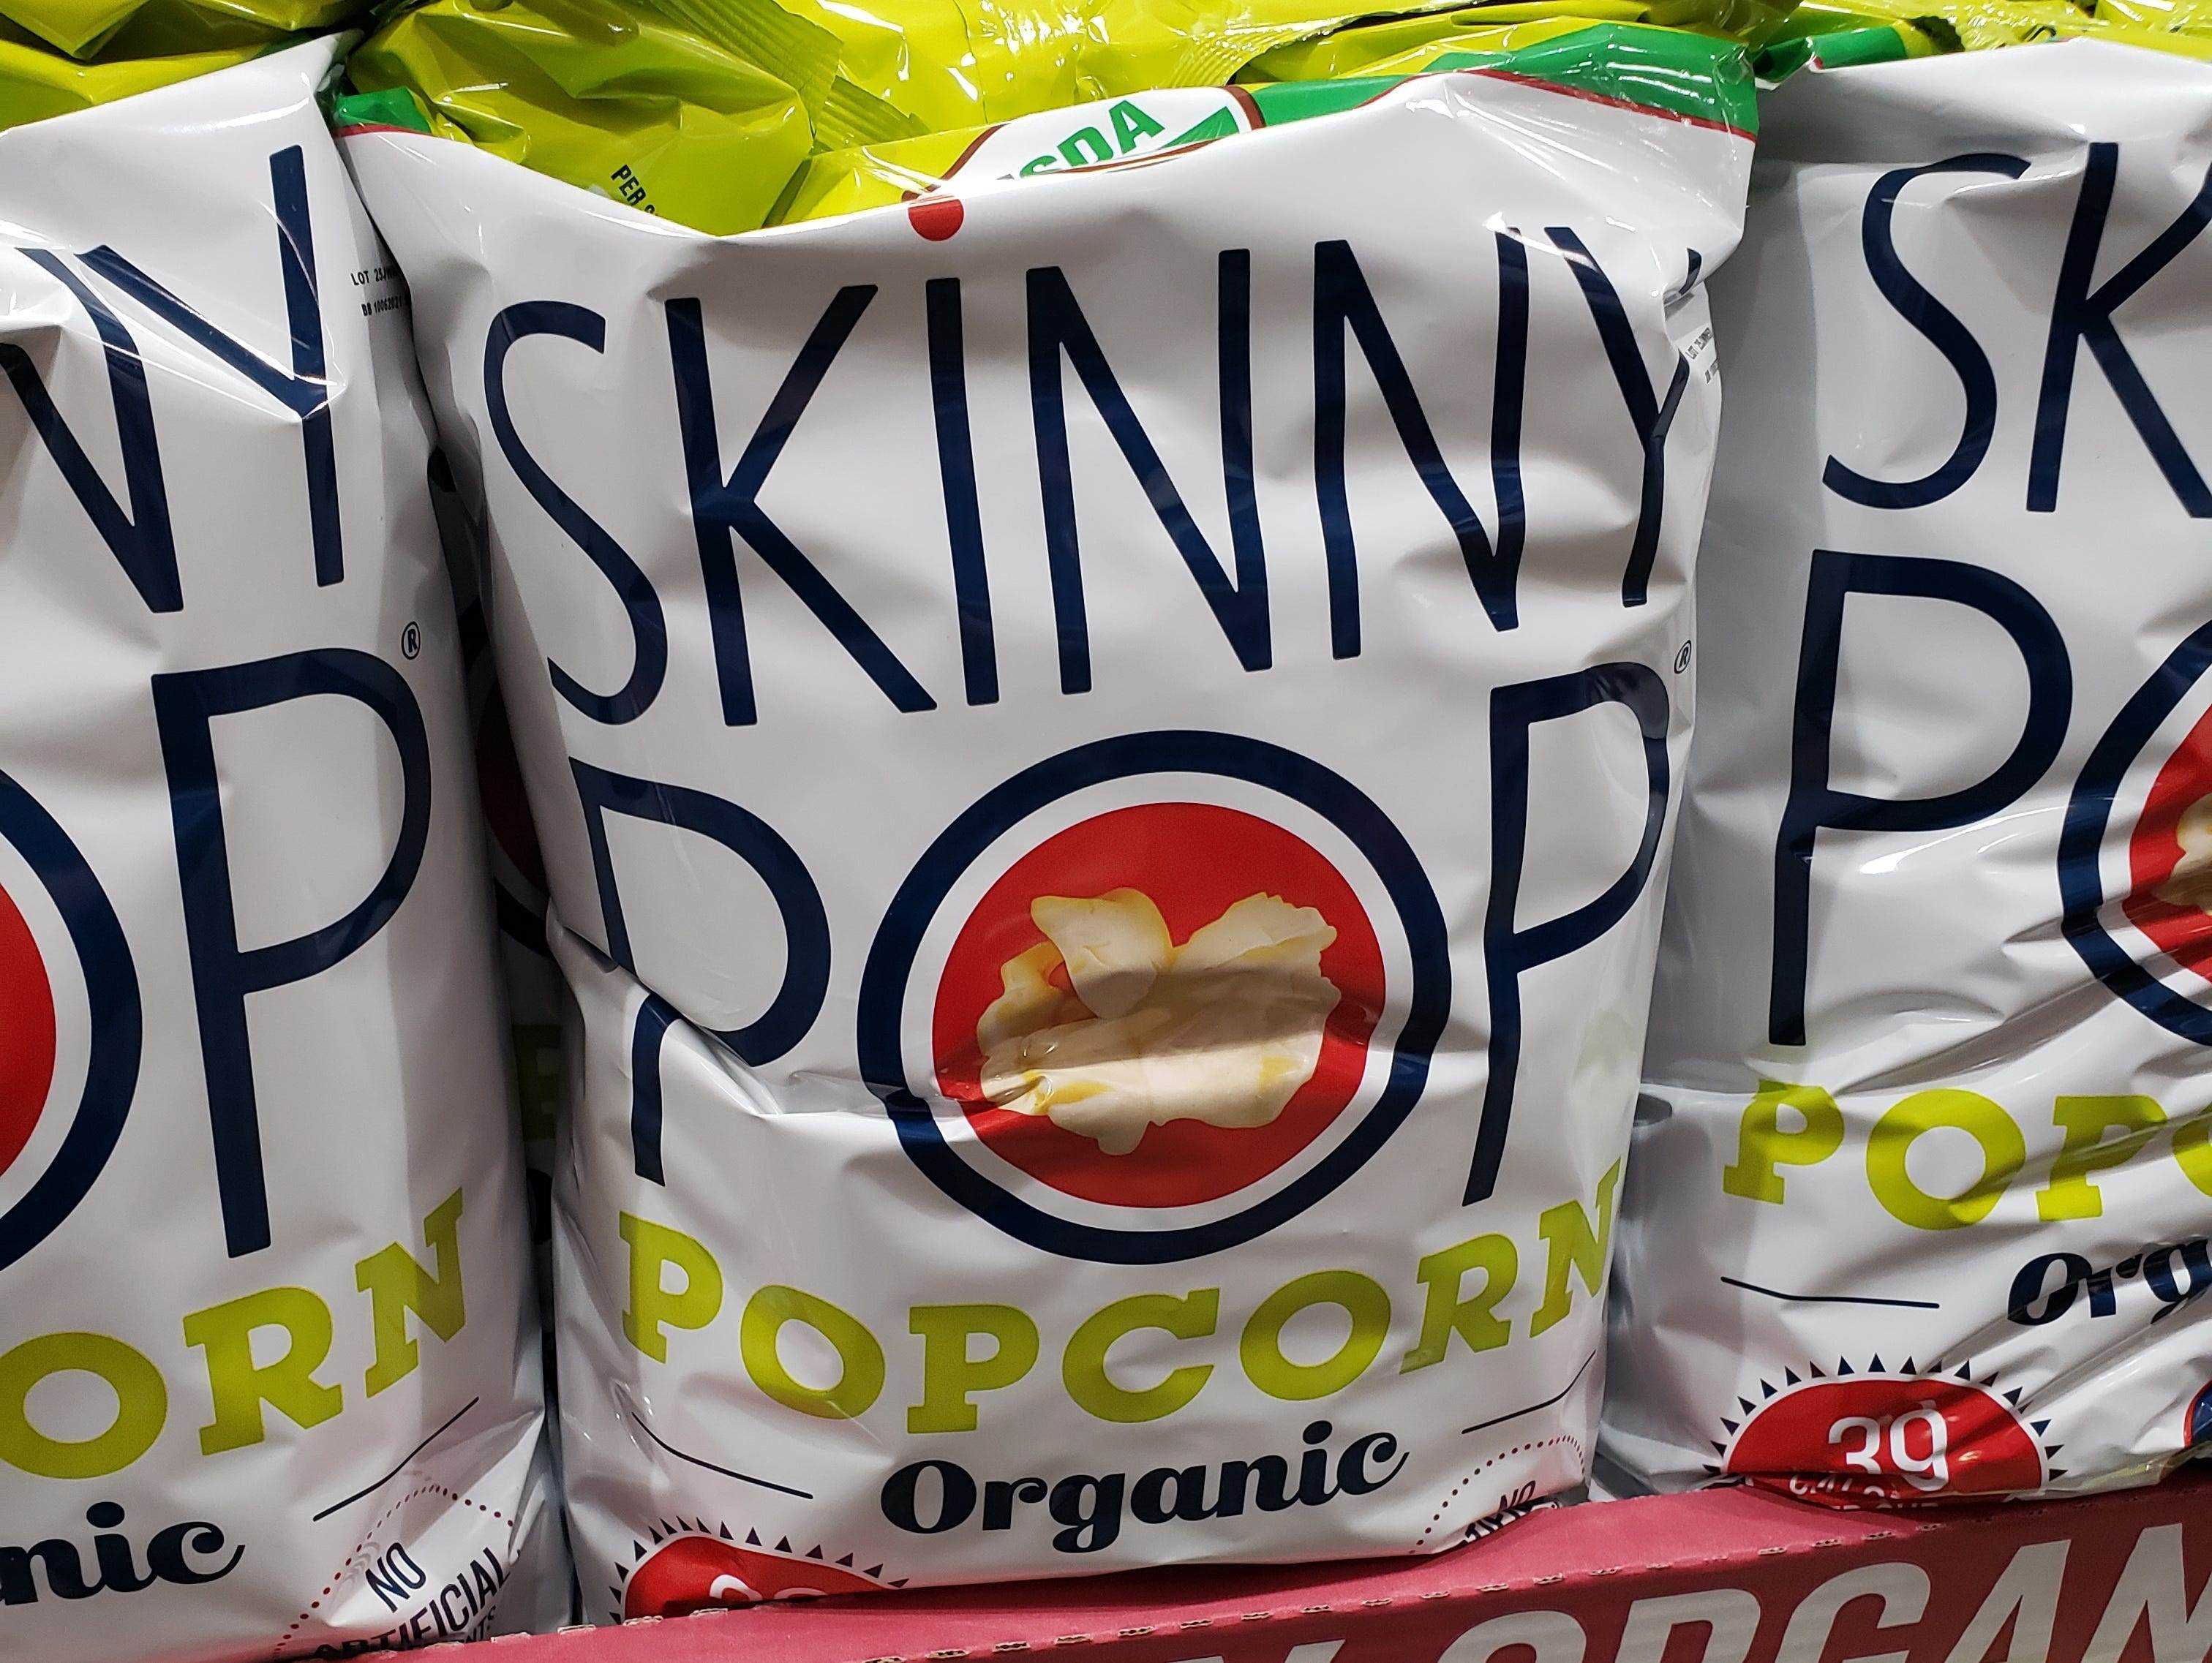 Taschen mit Skinnypop-Popcorn auf dem Display bei Costco